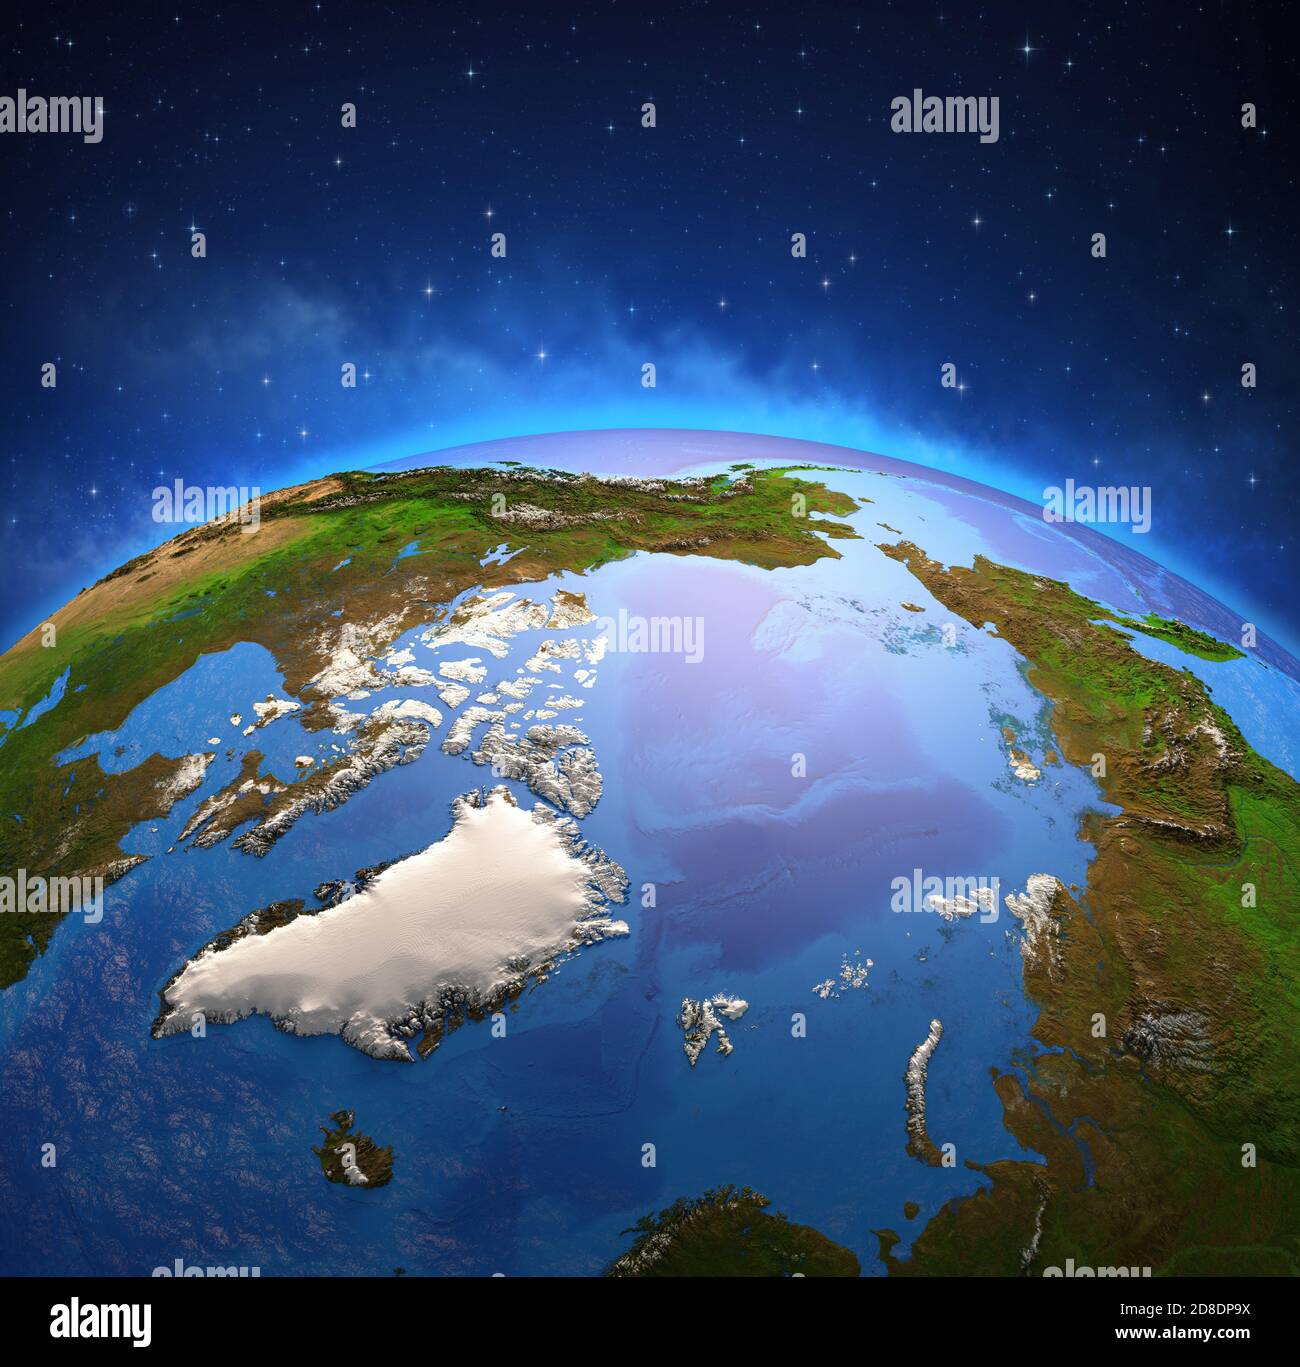 Surface de la planète Terre vue à partir d'un satellite, axé sur le pôle Nord et l'océan Arctique. Réchauffement climatique au Groenland. Éléments fournis par la NASA Banque D'Images